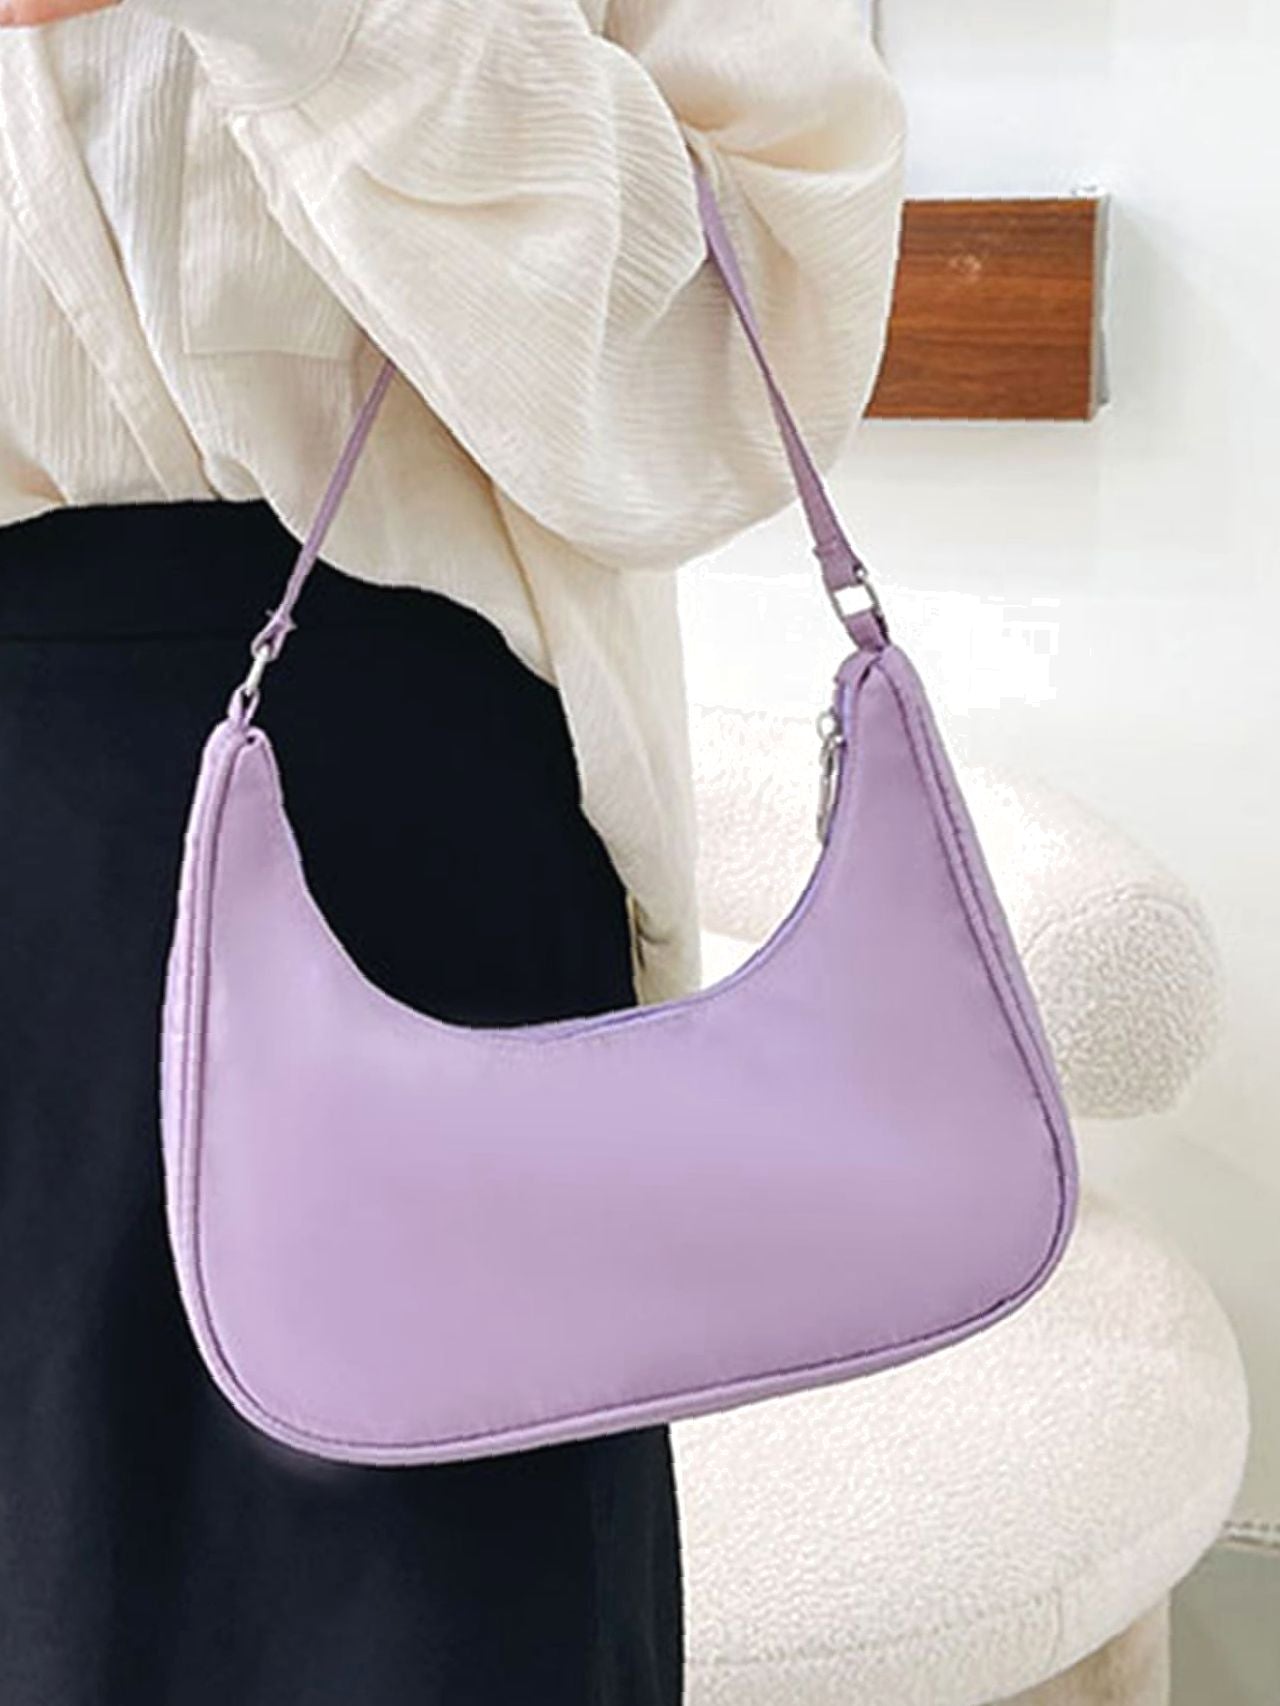 JPK Paris 75 Purple Shoulder Bag - Flawed | eBay